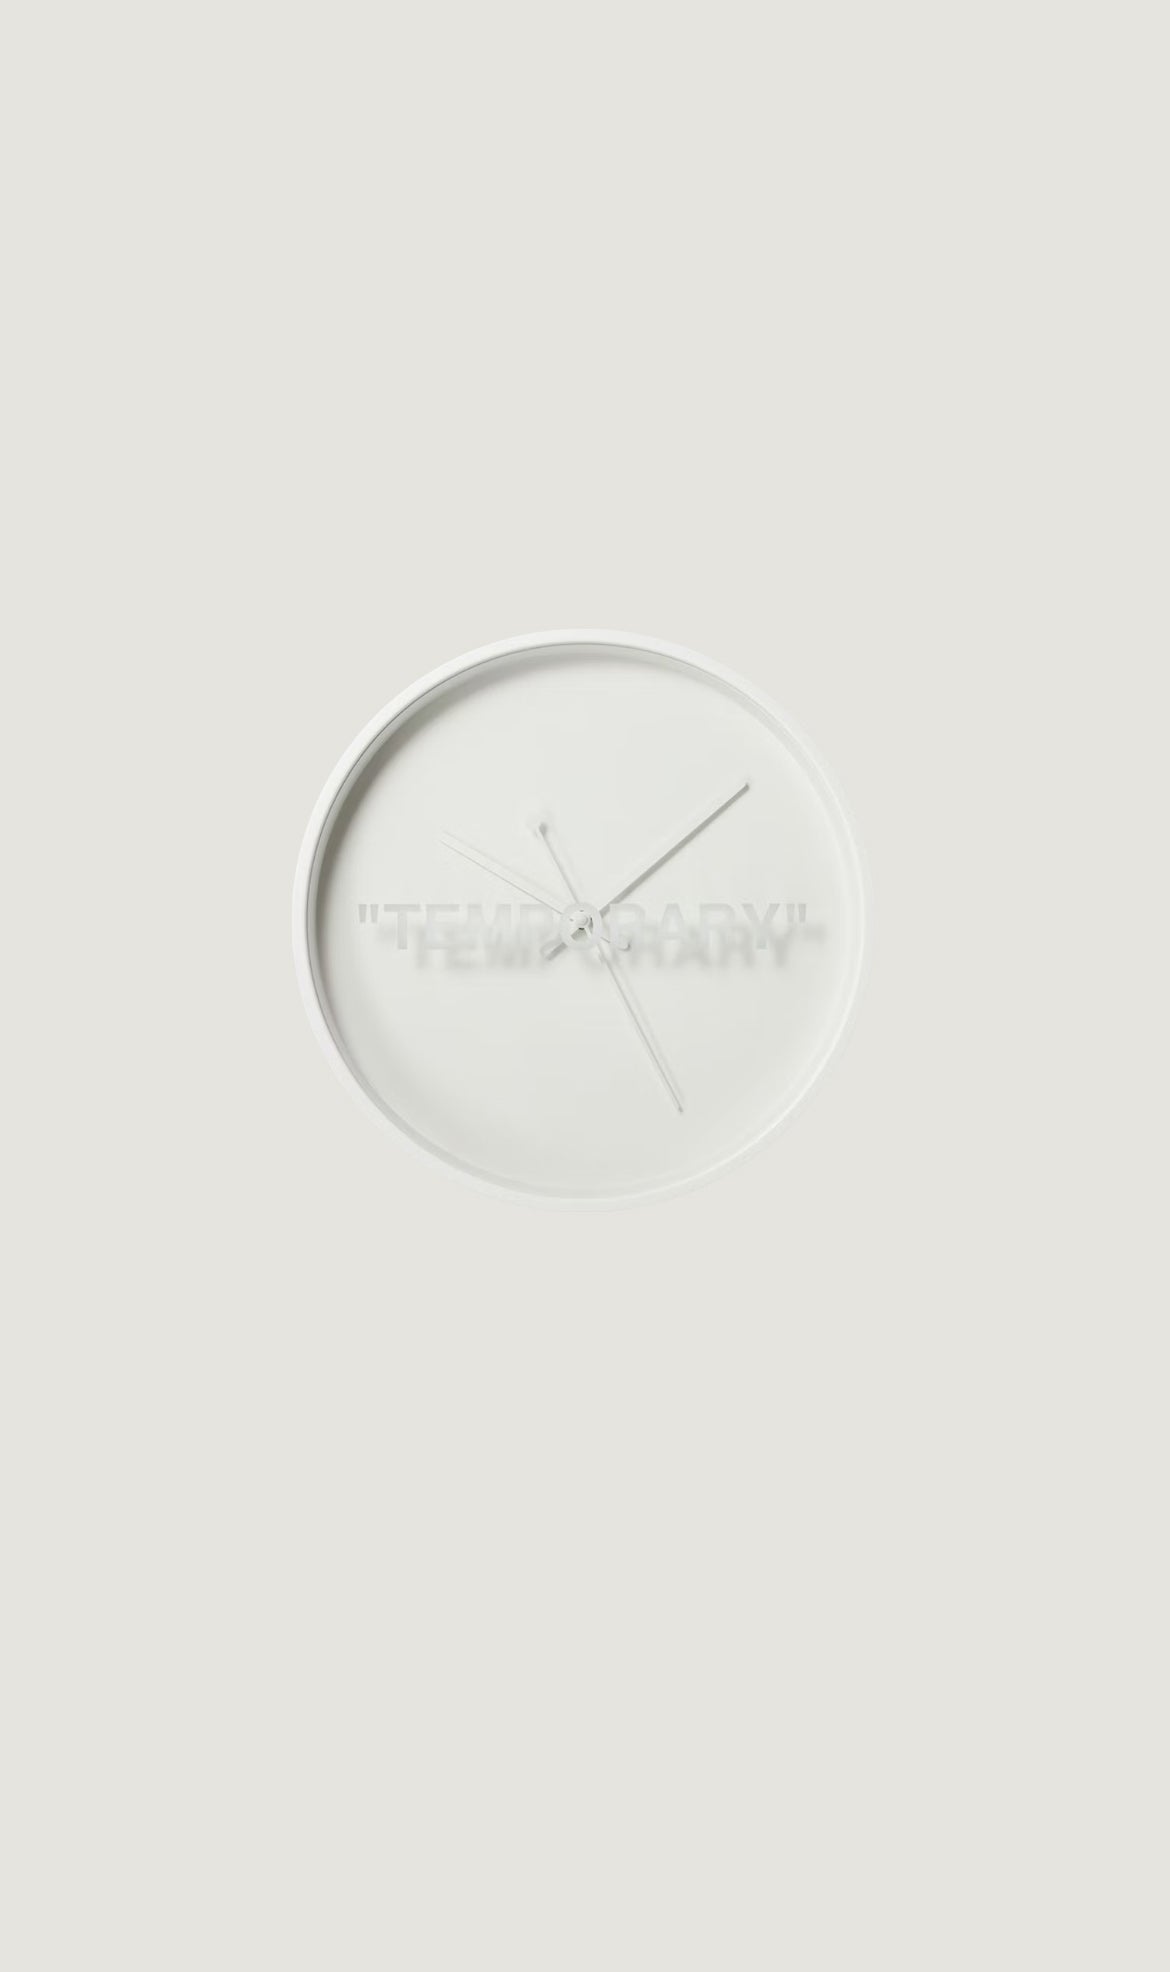 Clock Virgil Abloh x Ikea White in Steel - 10133143